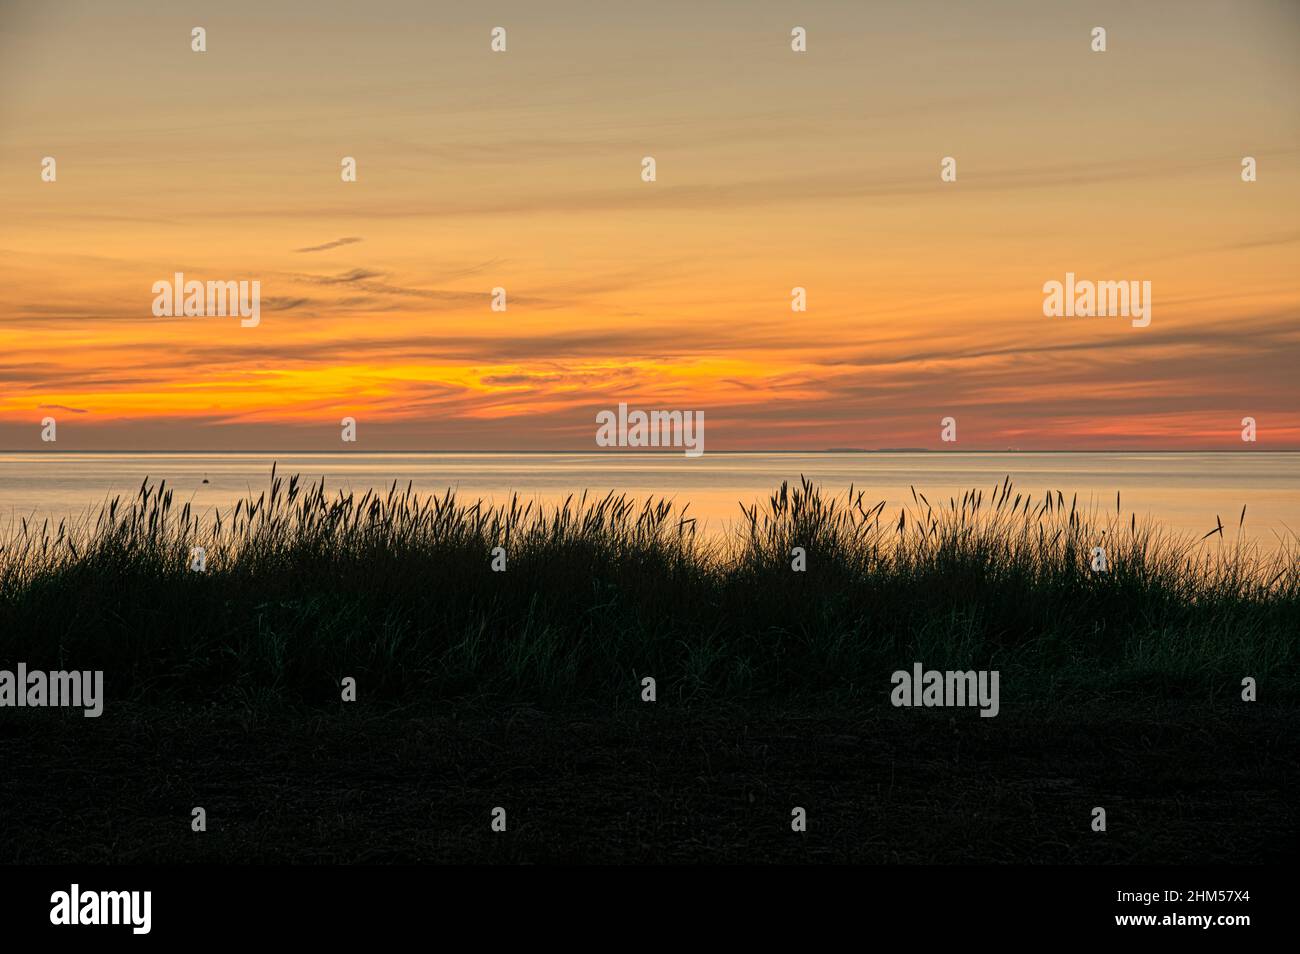 silhouette of dune grass against the sea and the rising sun, Hvidbjerg, Denmark, September 12, 2021 Stock Photo